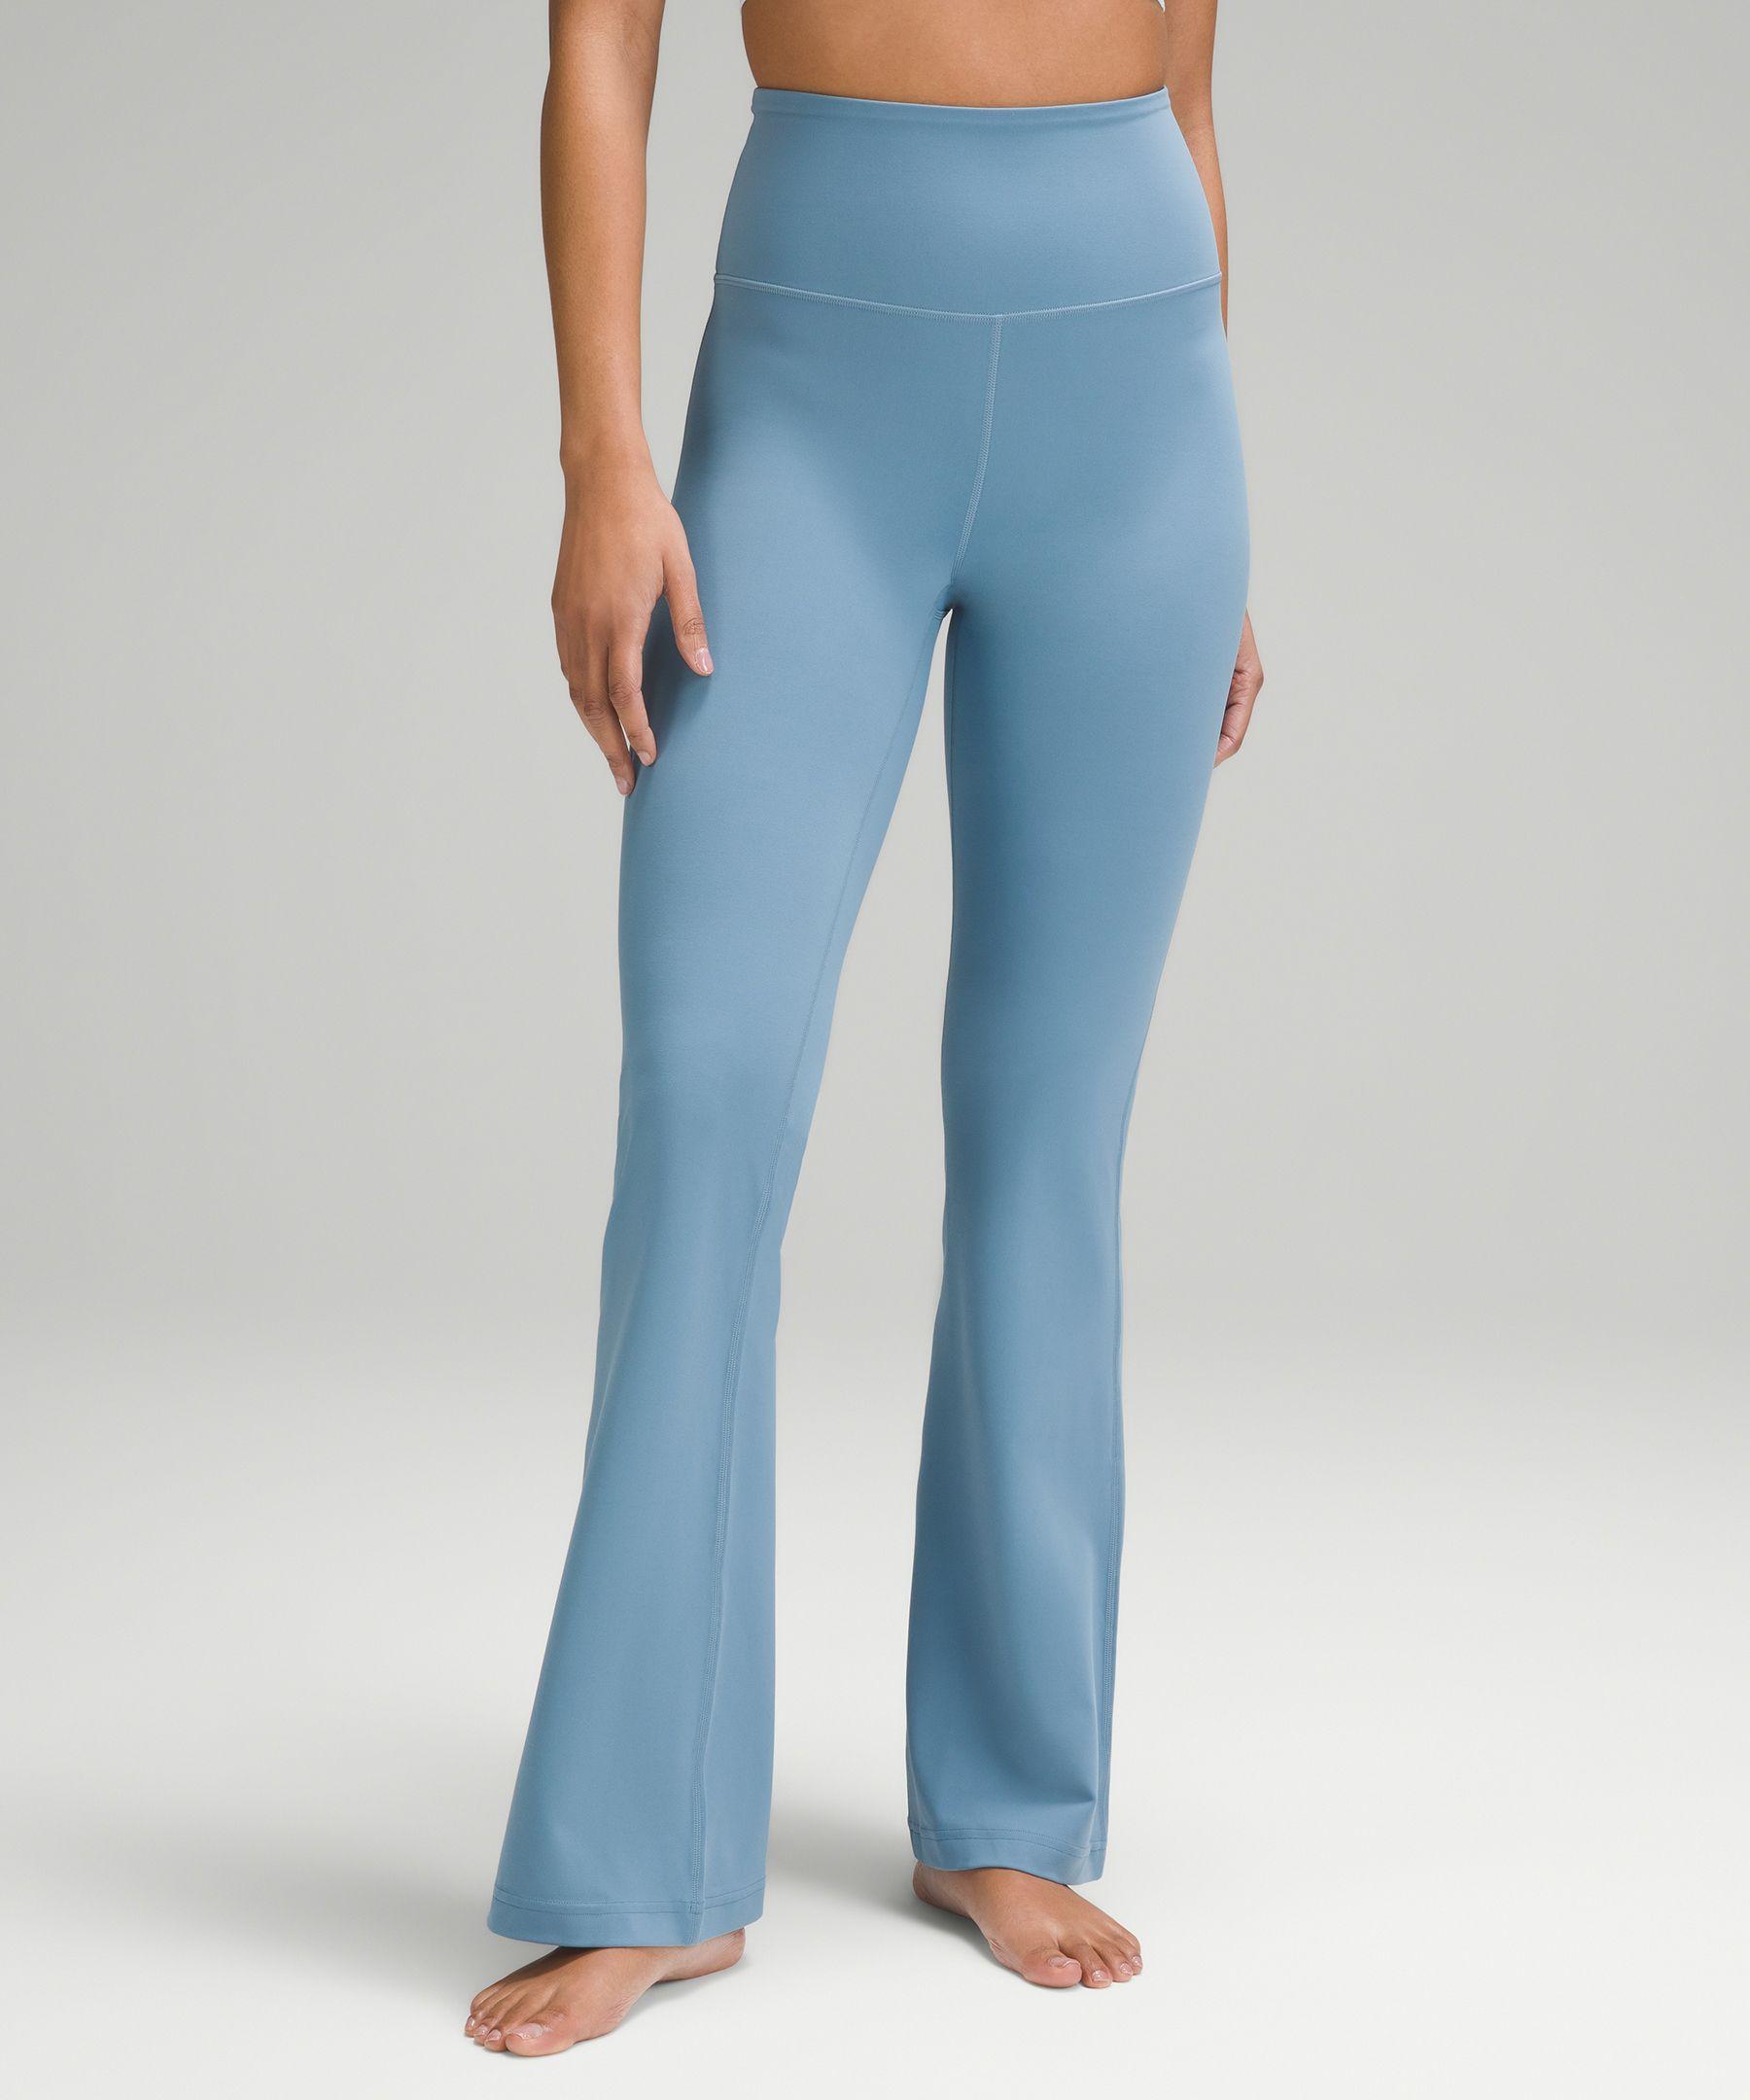 lululemon athletica Groove Super-high-rise Flared Pants Nulu Regular -  Color Blue - Size 12 | Lyst